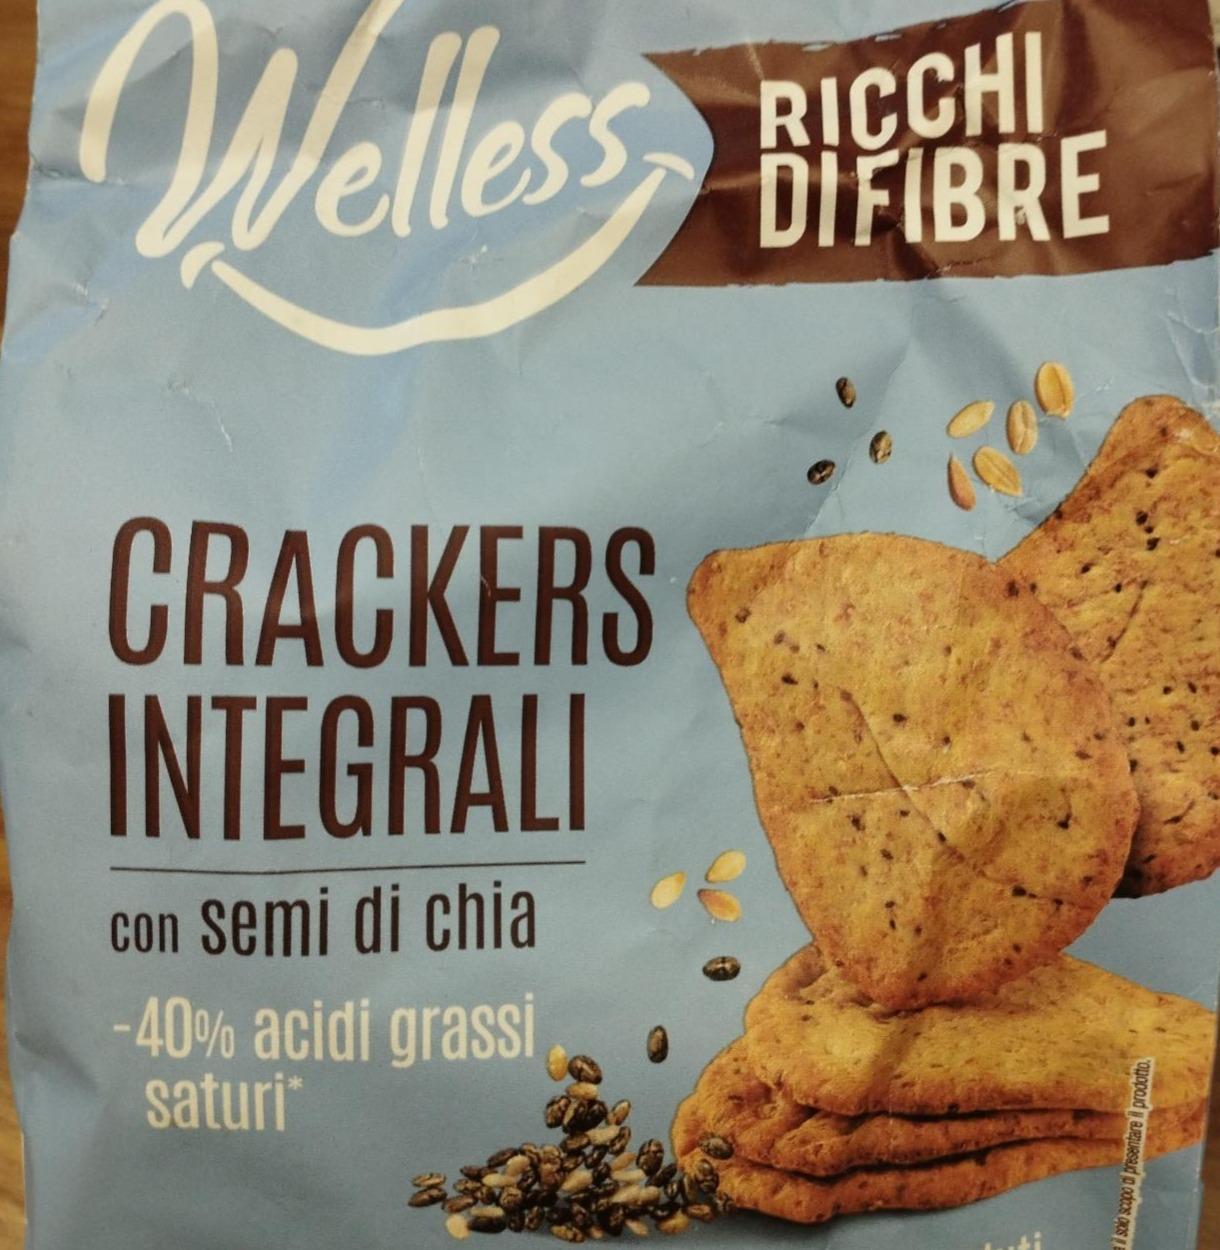 Фото - Crackers integrali con semi di chia Welless